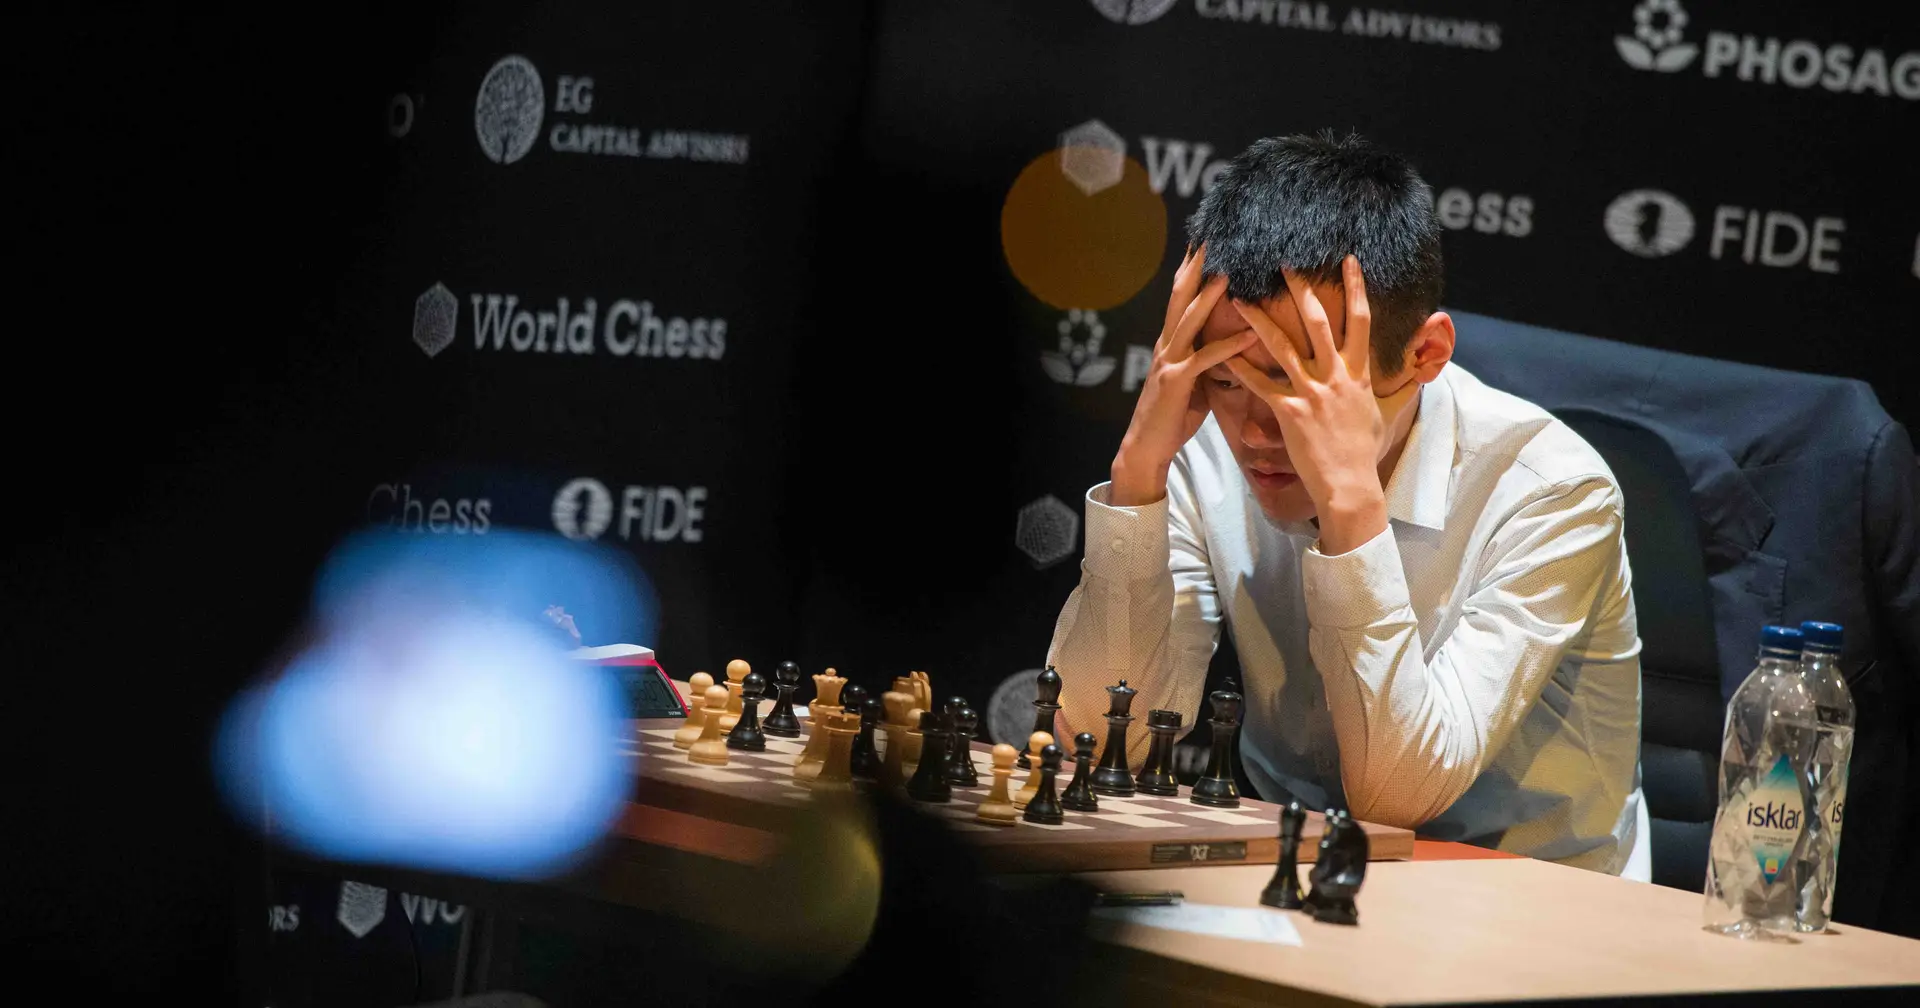 Pela primeira vez, campeão mundial de xadrez é chinês – DW – 30/04